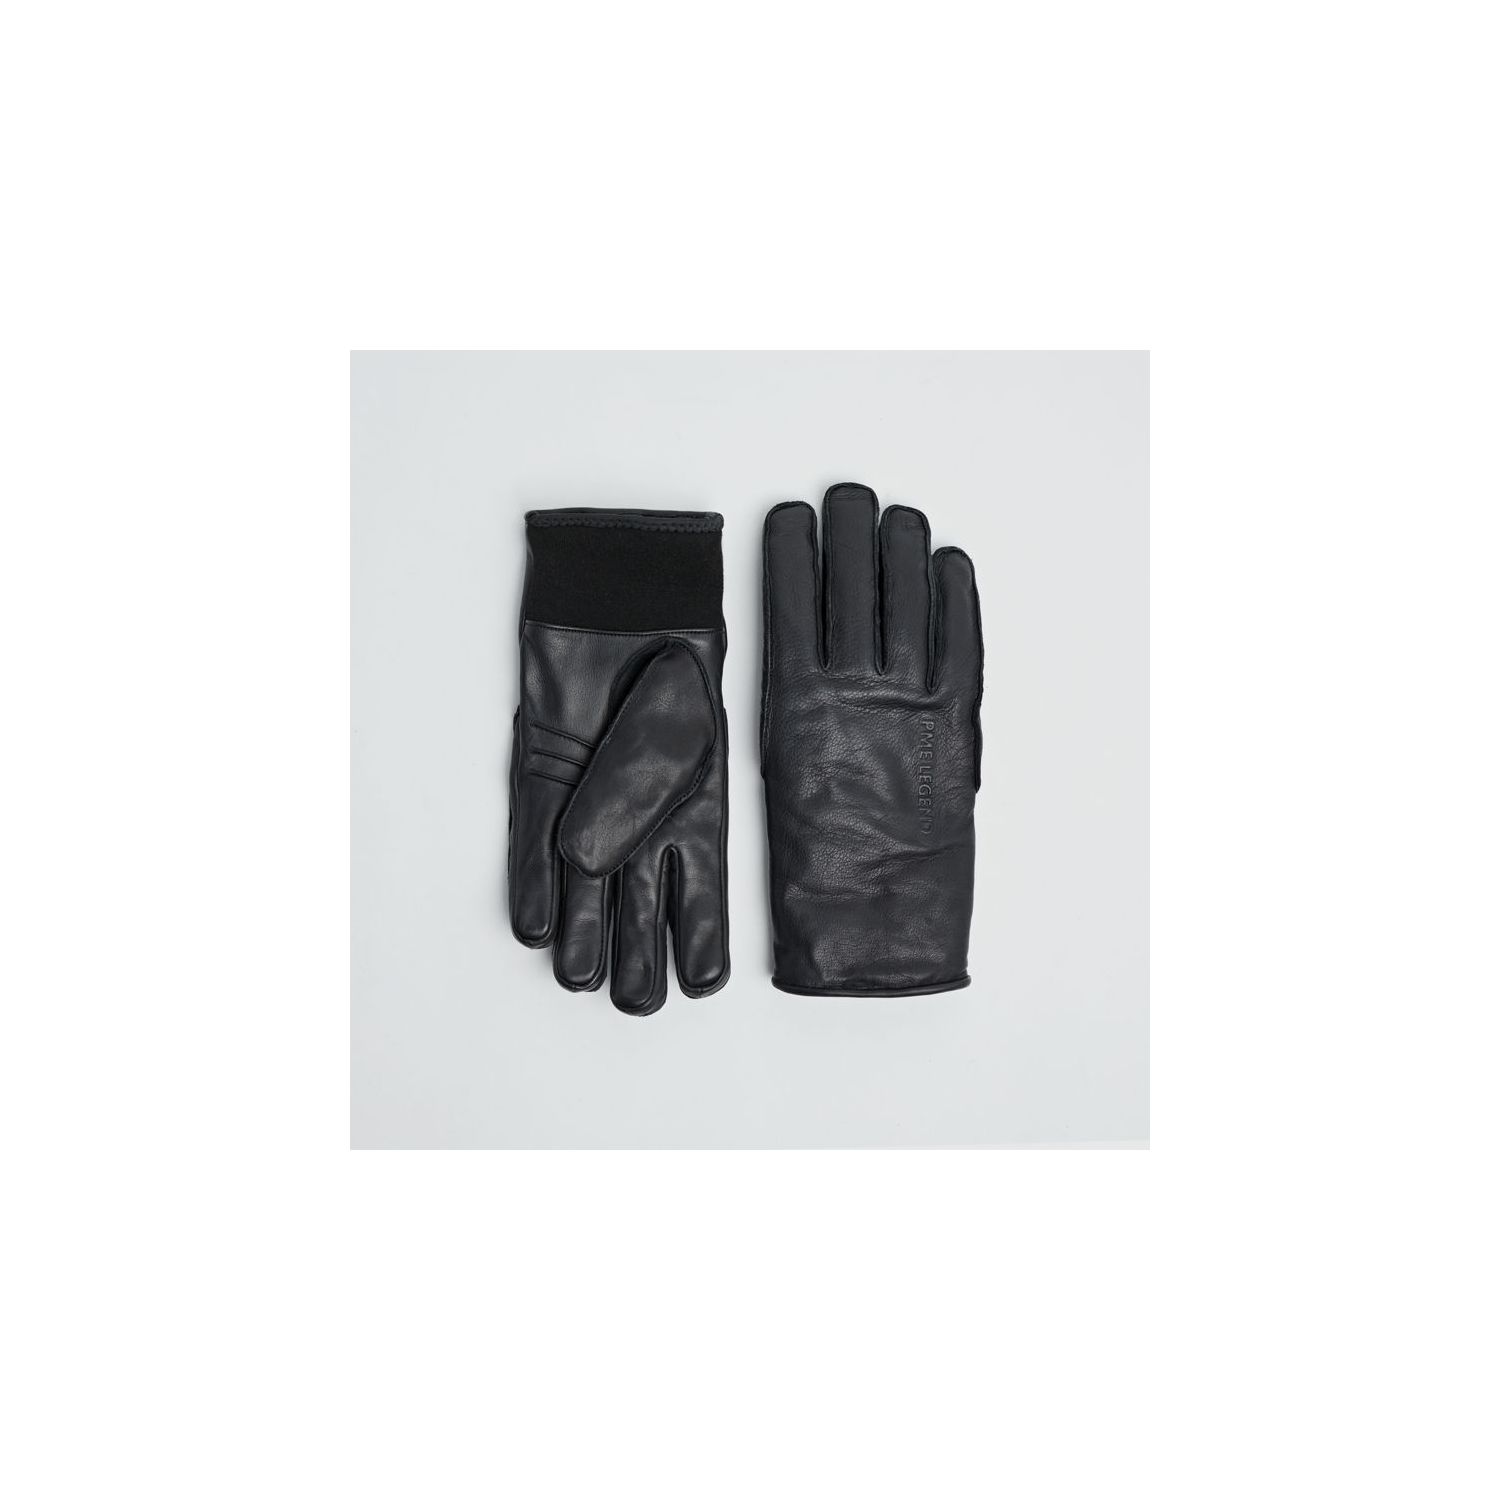 Legend glove leather black dull | Van Schoenen